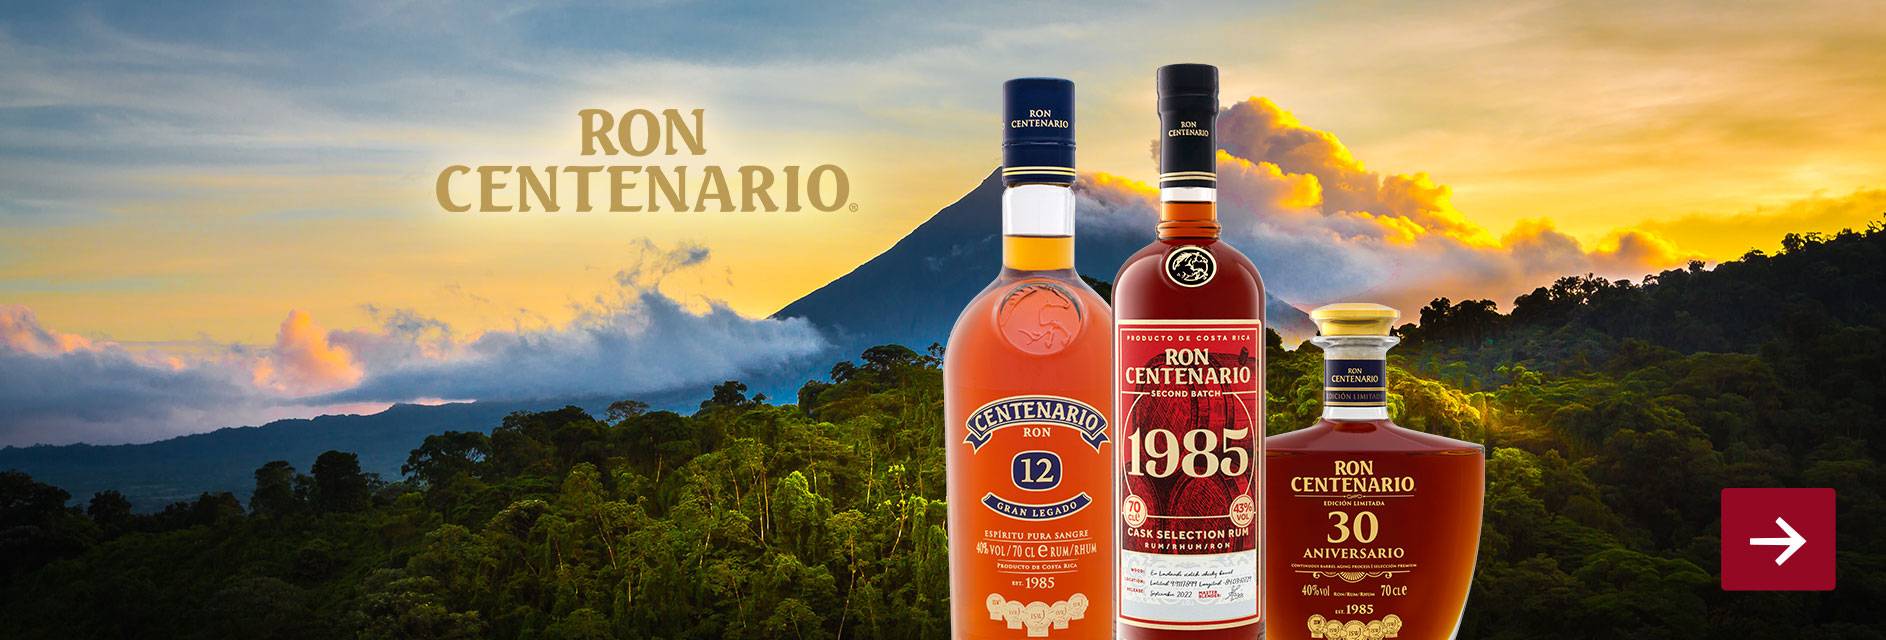 Ron Centenario Rum | Second 1985 LIDL Batch Vol 43